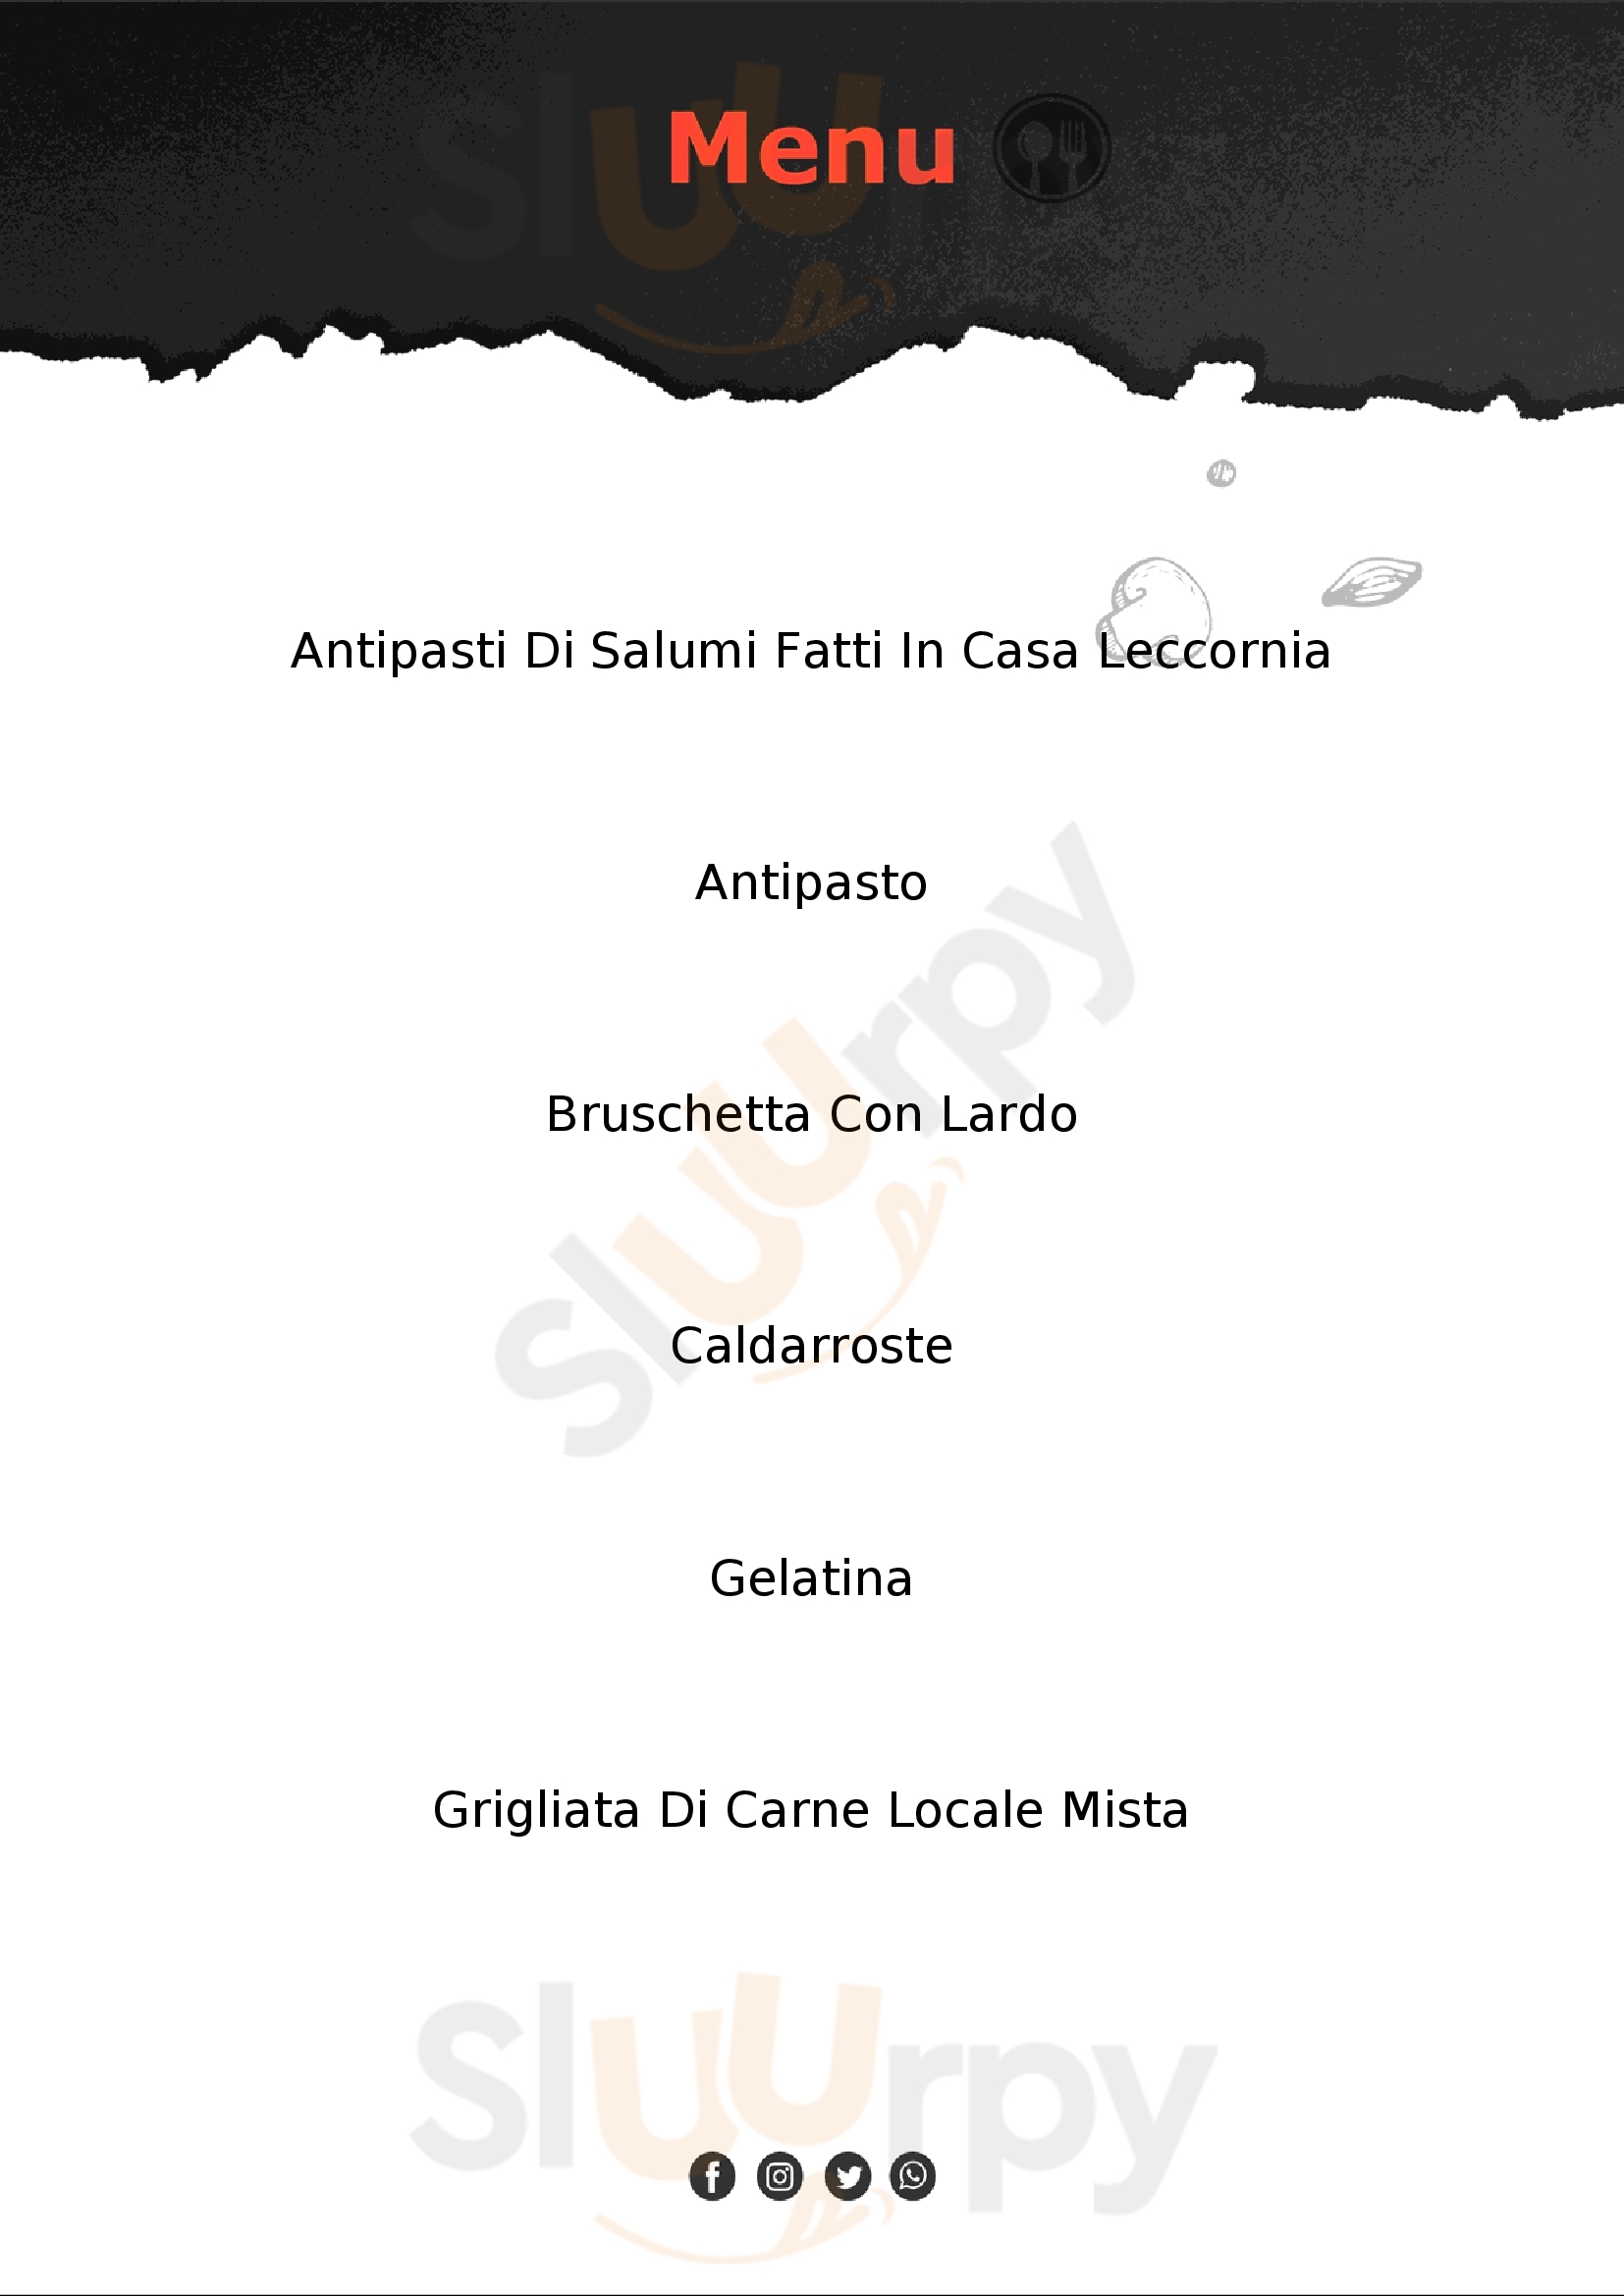 Macelleria Griglieria da Nino Malvagna menù 1 pagina